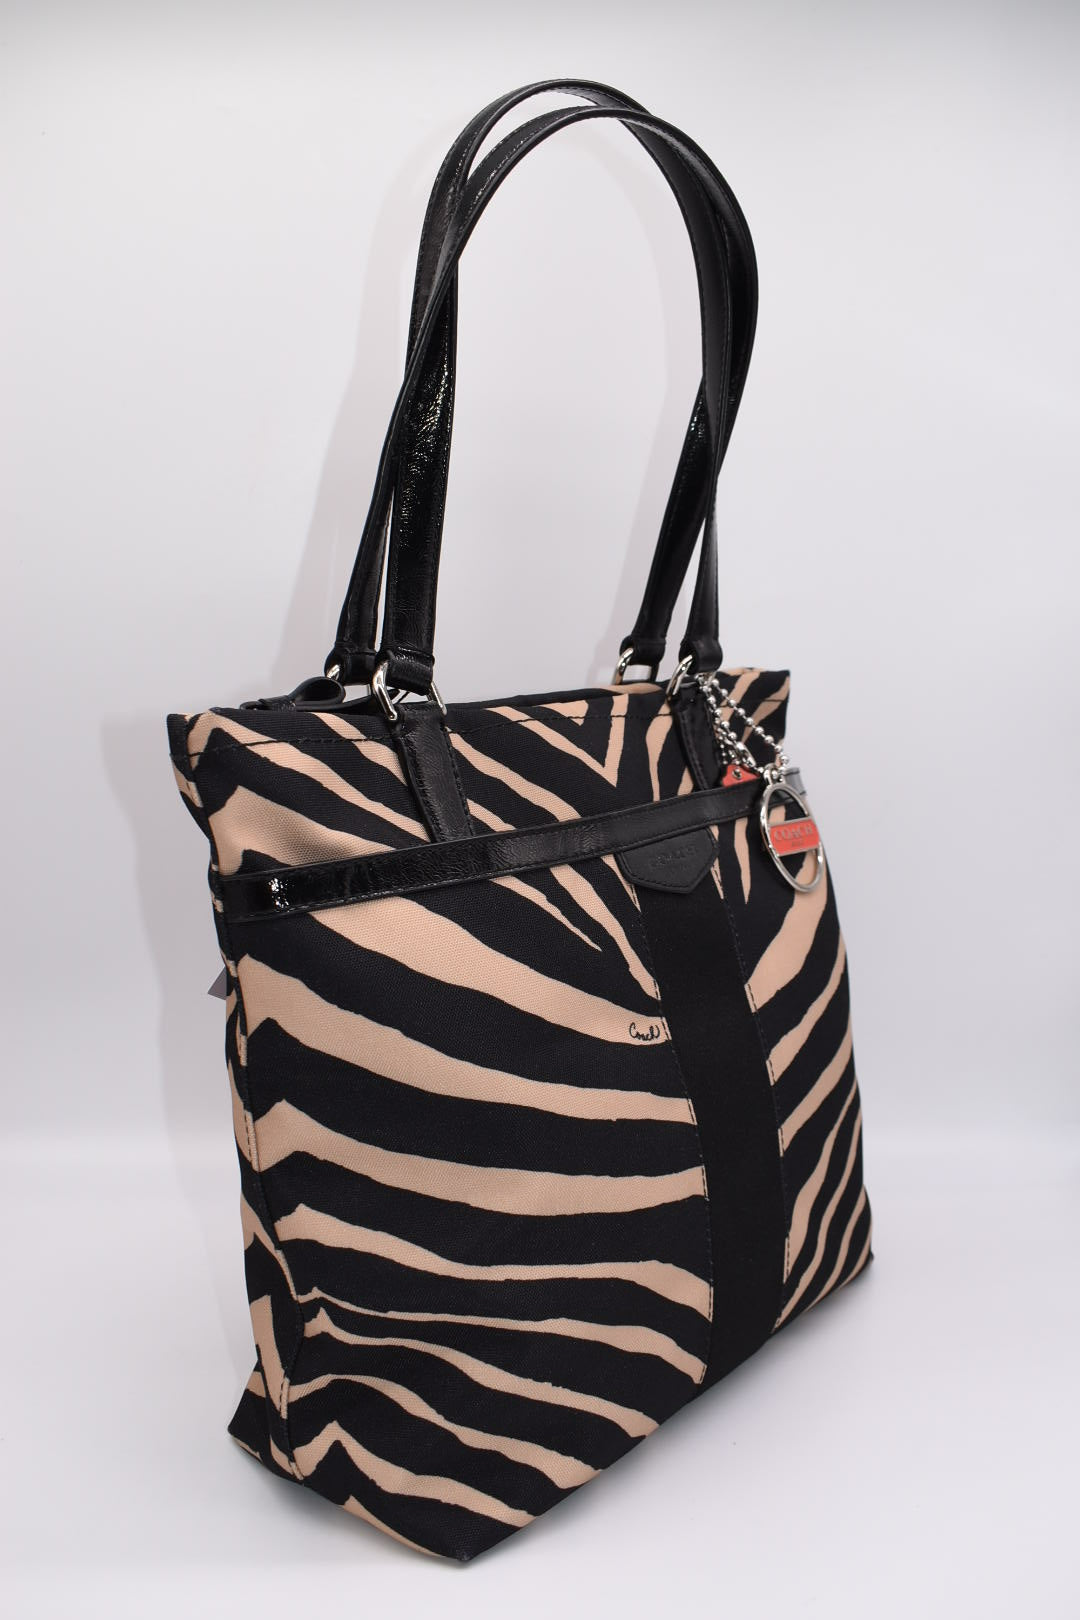 Coach Zebra Print Tote Bag